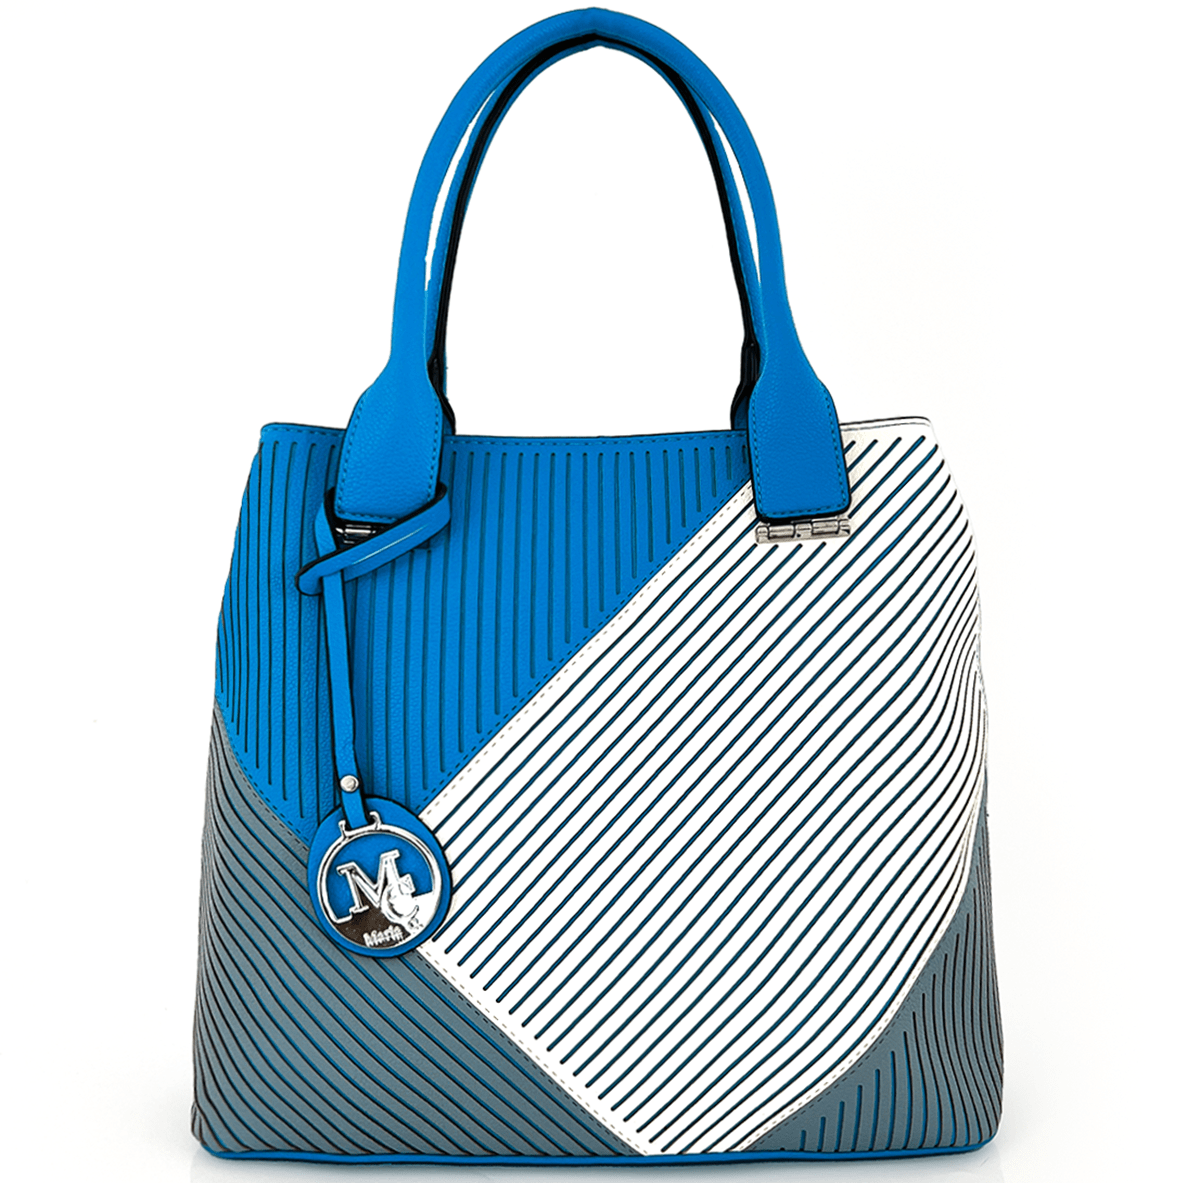 Луксозна дамска чанта - синя 